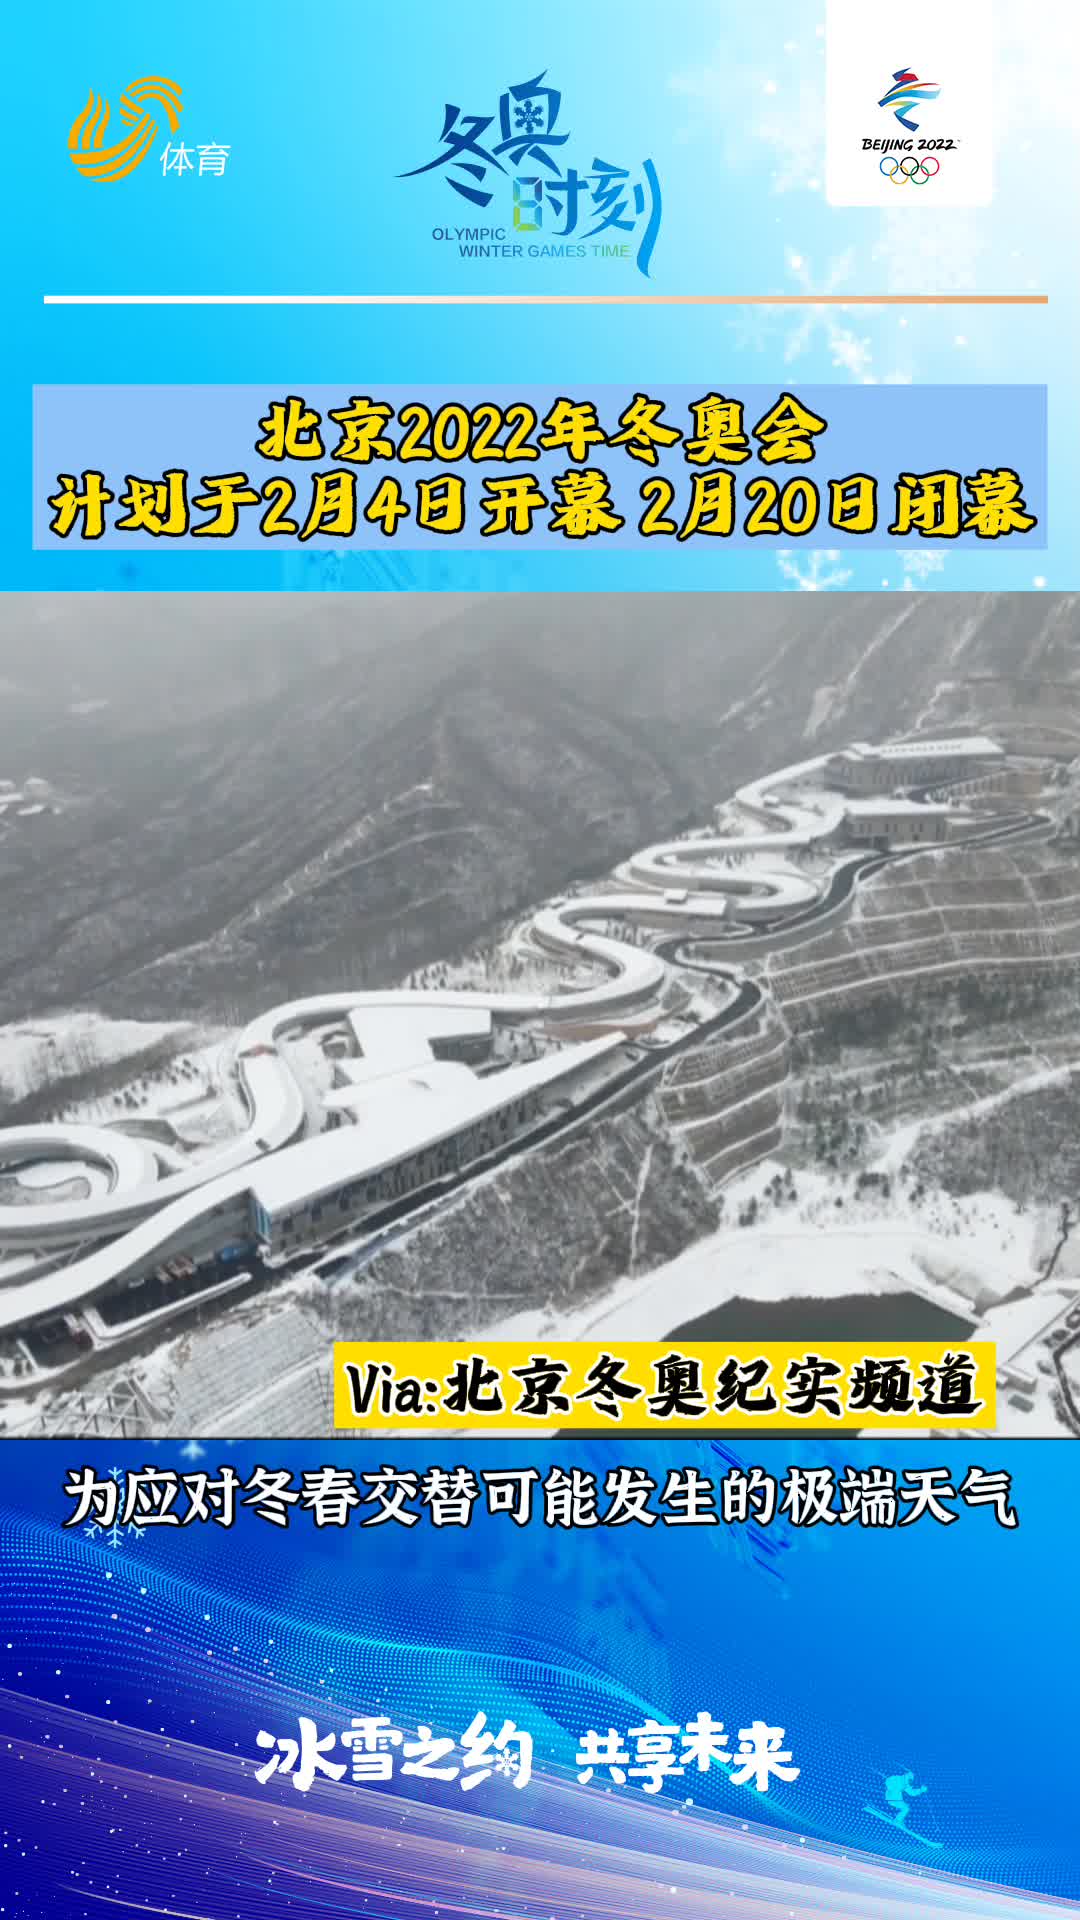 冬奥时刻丨北京2022年冬奥会计划于2月4日开幕 2月20日闭幕